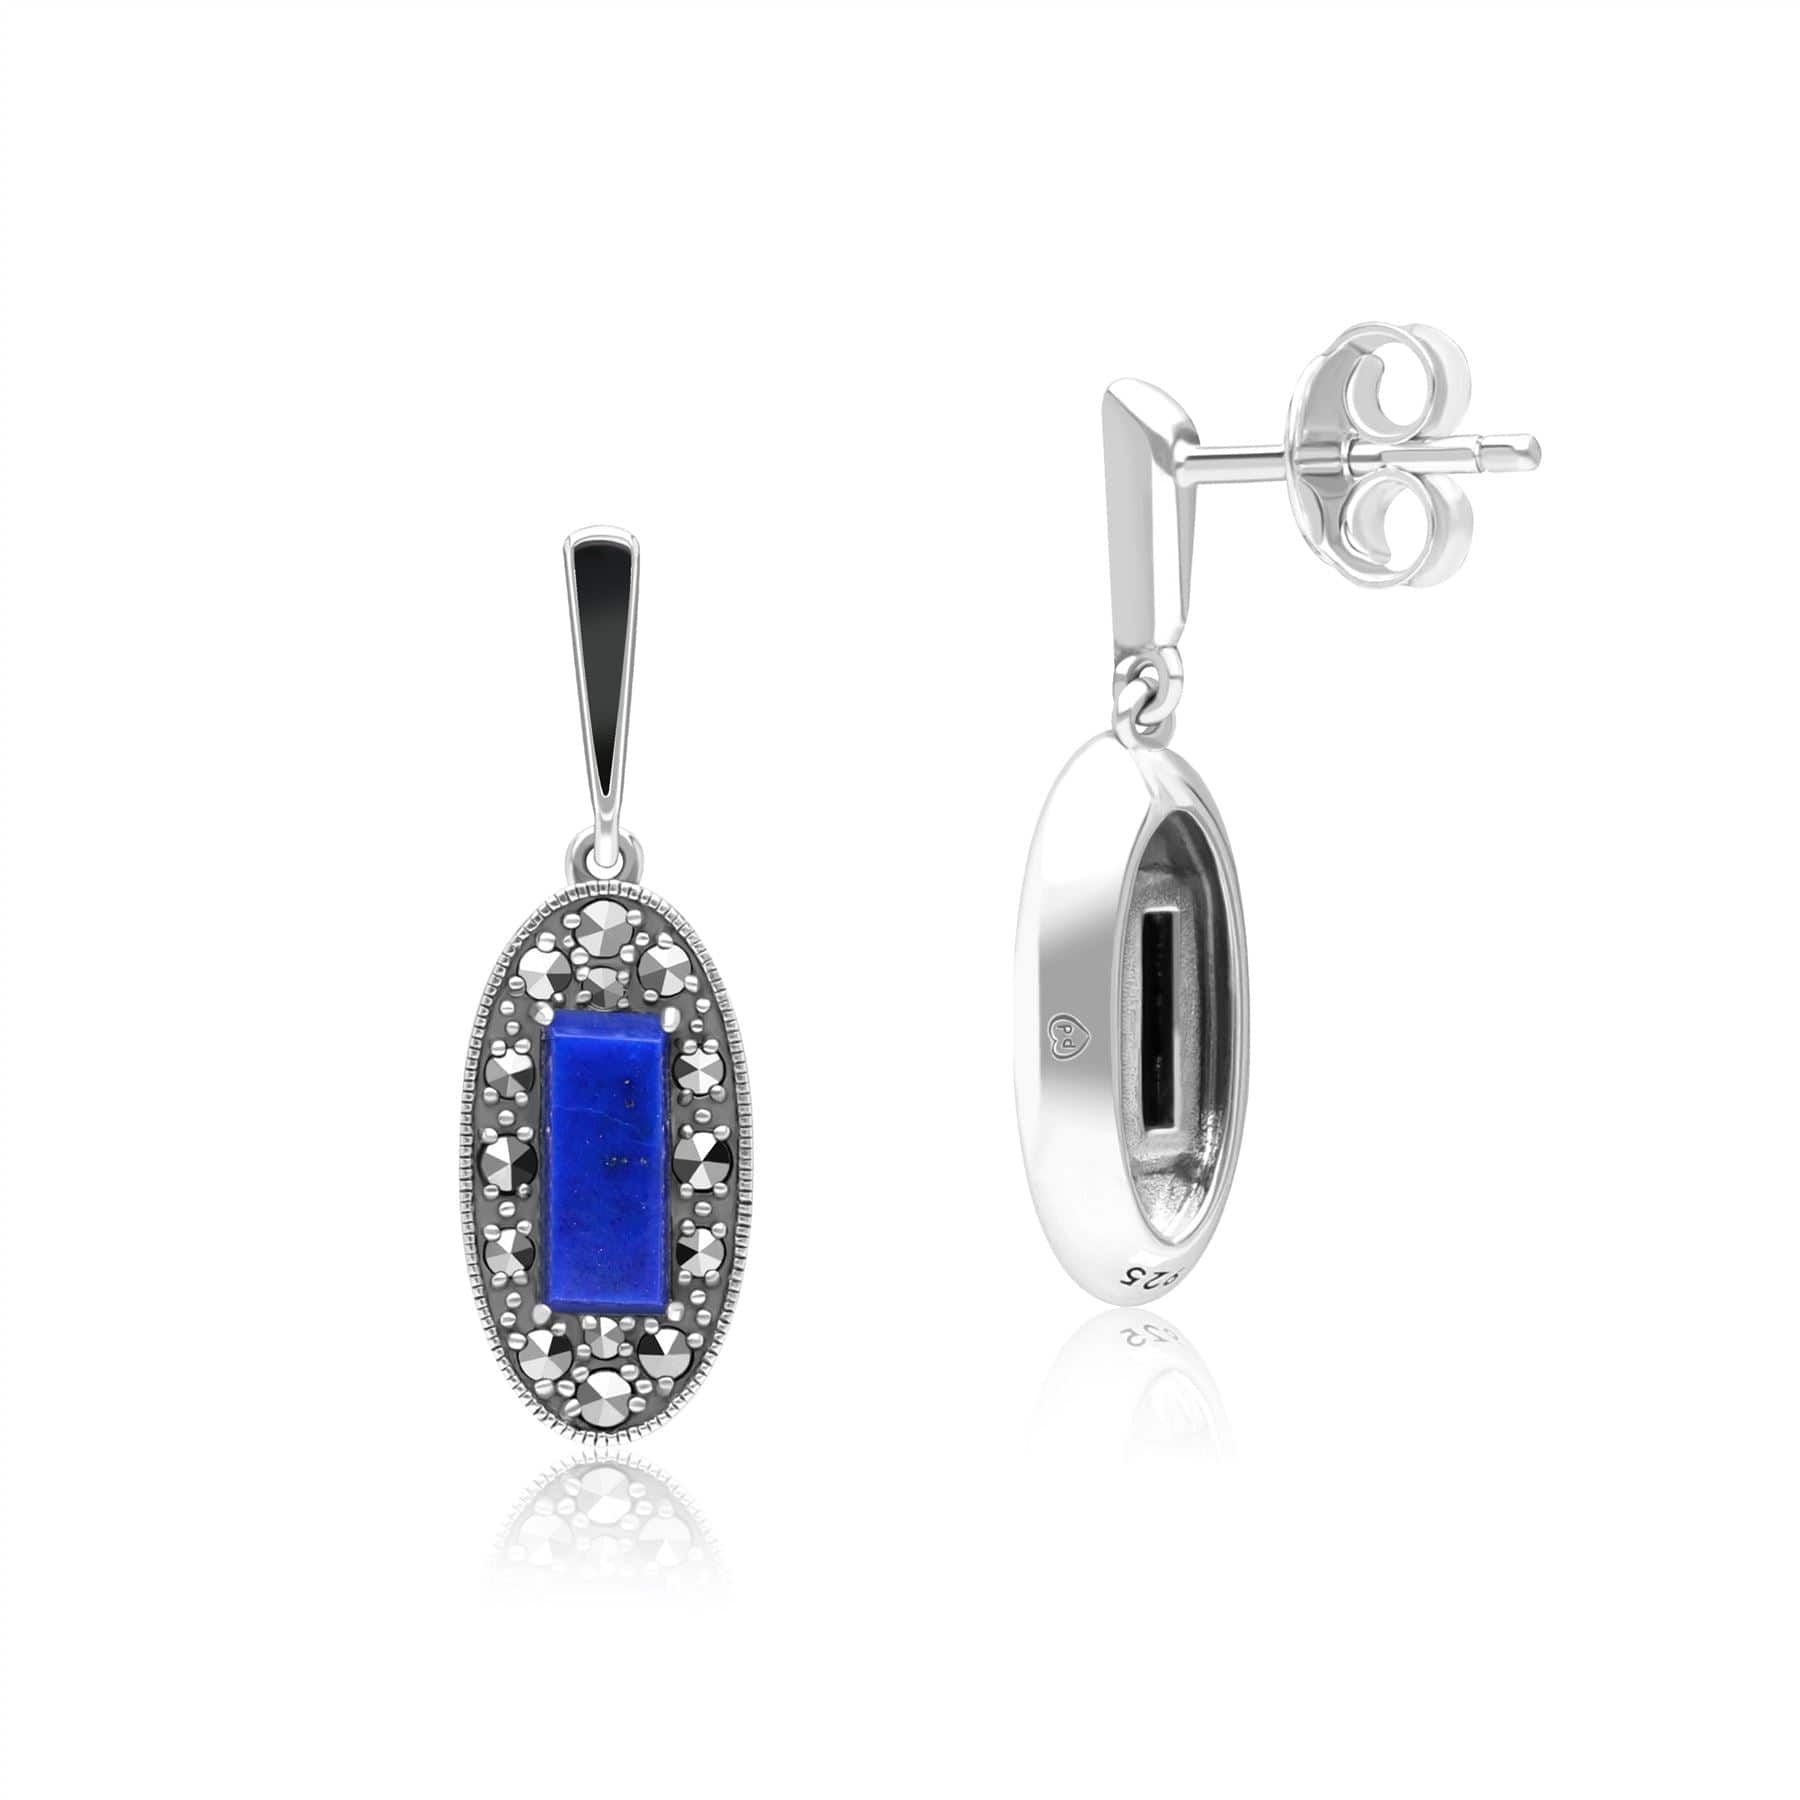 Art Deco Style Oval Lapis Lazuli, Marcasite and Black Enamel Drop Earrings in Sterling Silver 214E936401925 Side